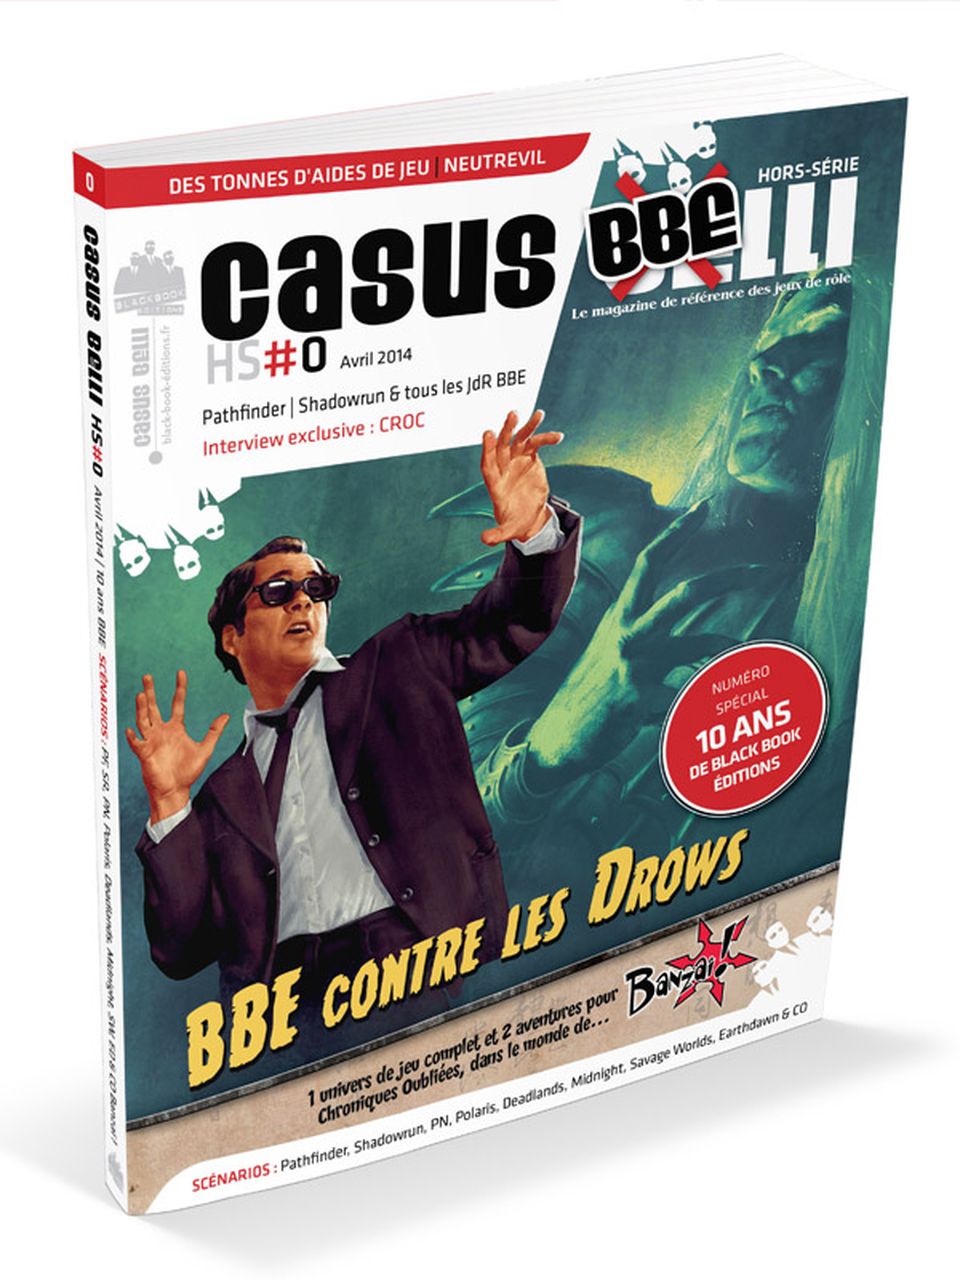 Casus Belli Hors-série #0 - Casus BBElli image